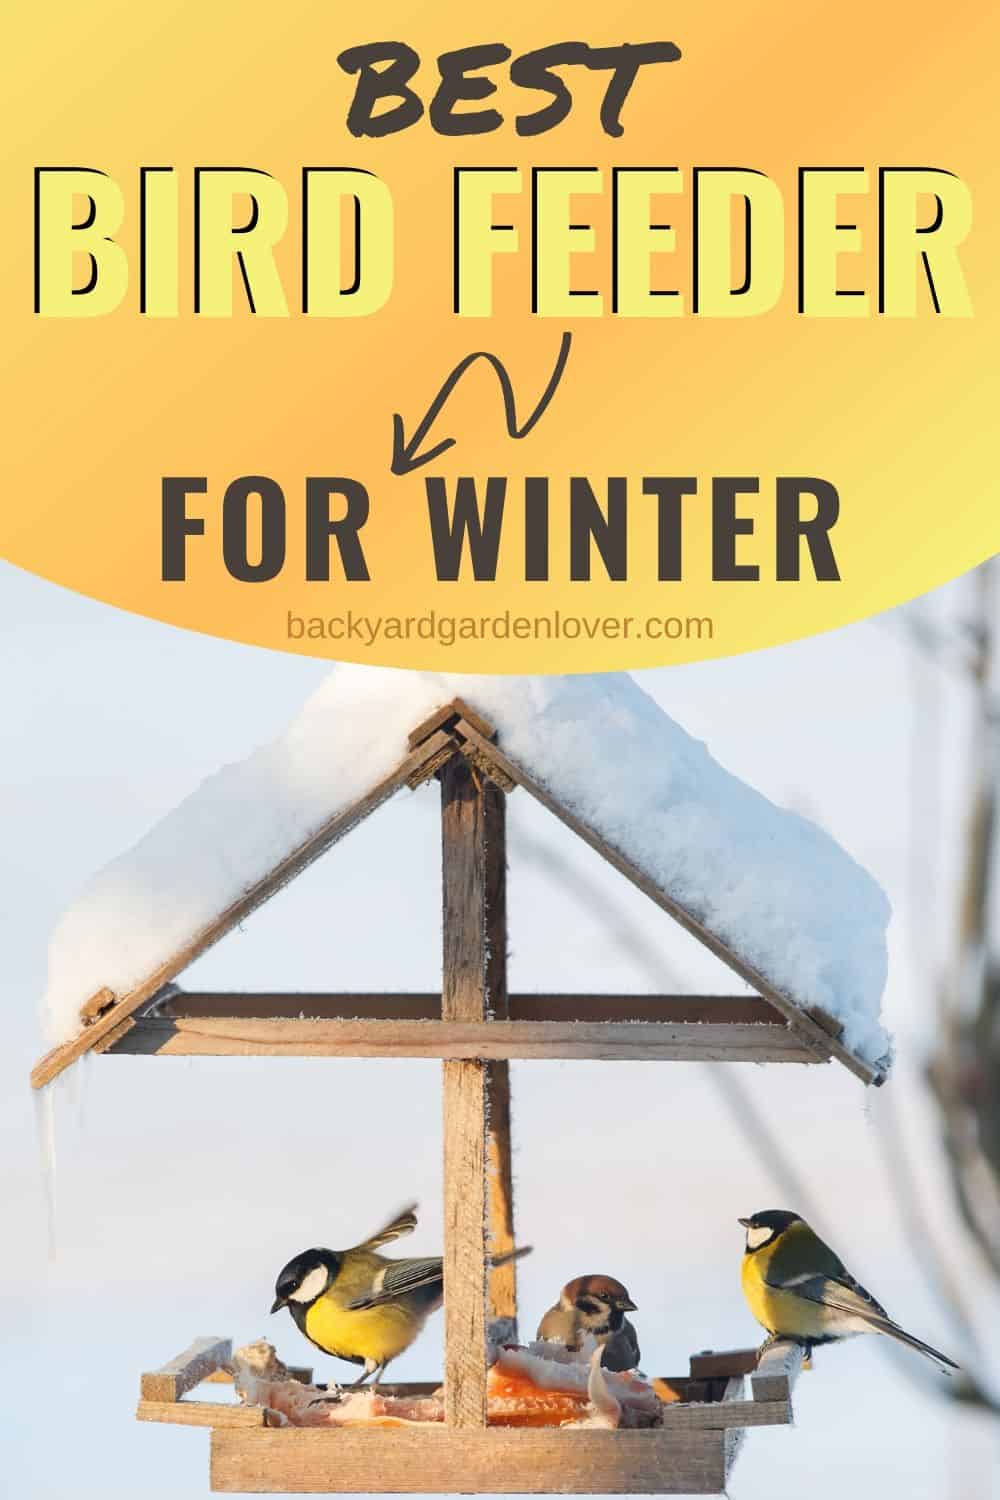 Best bird feeder for winter